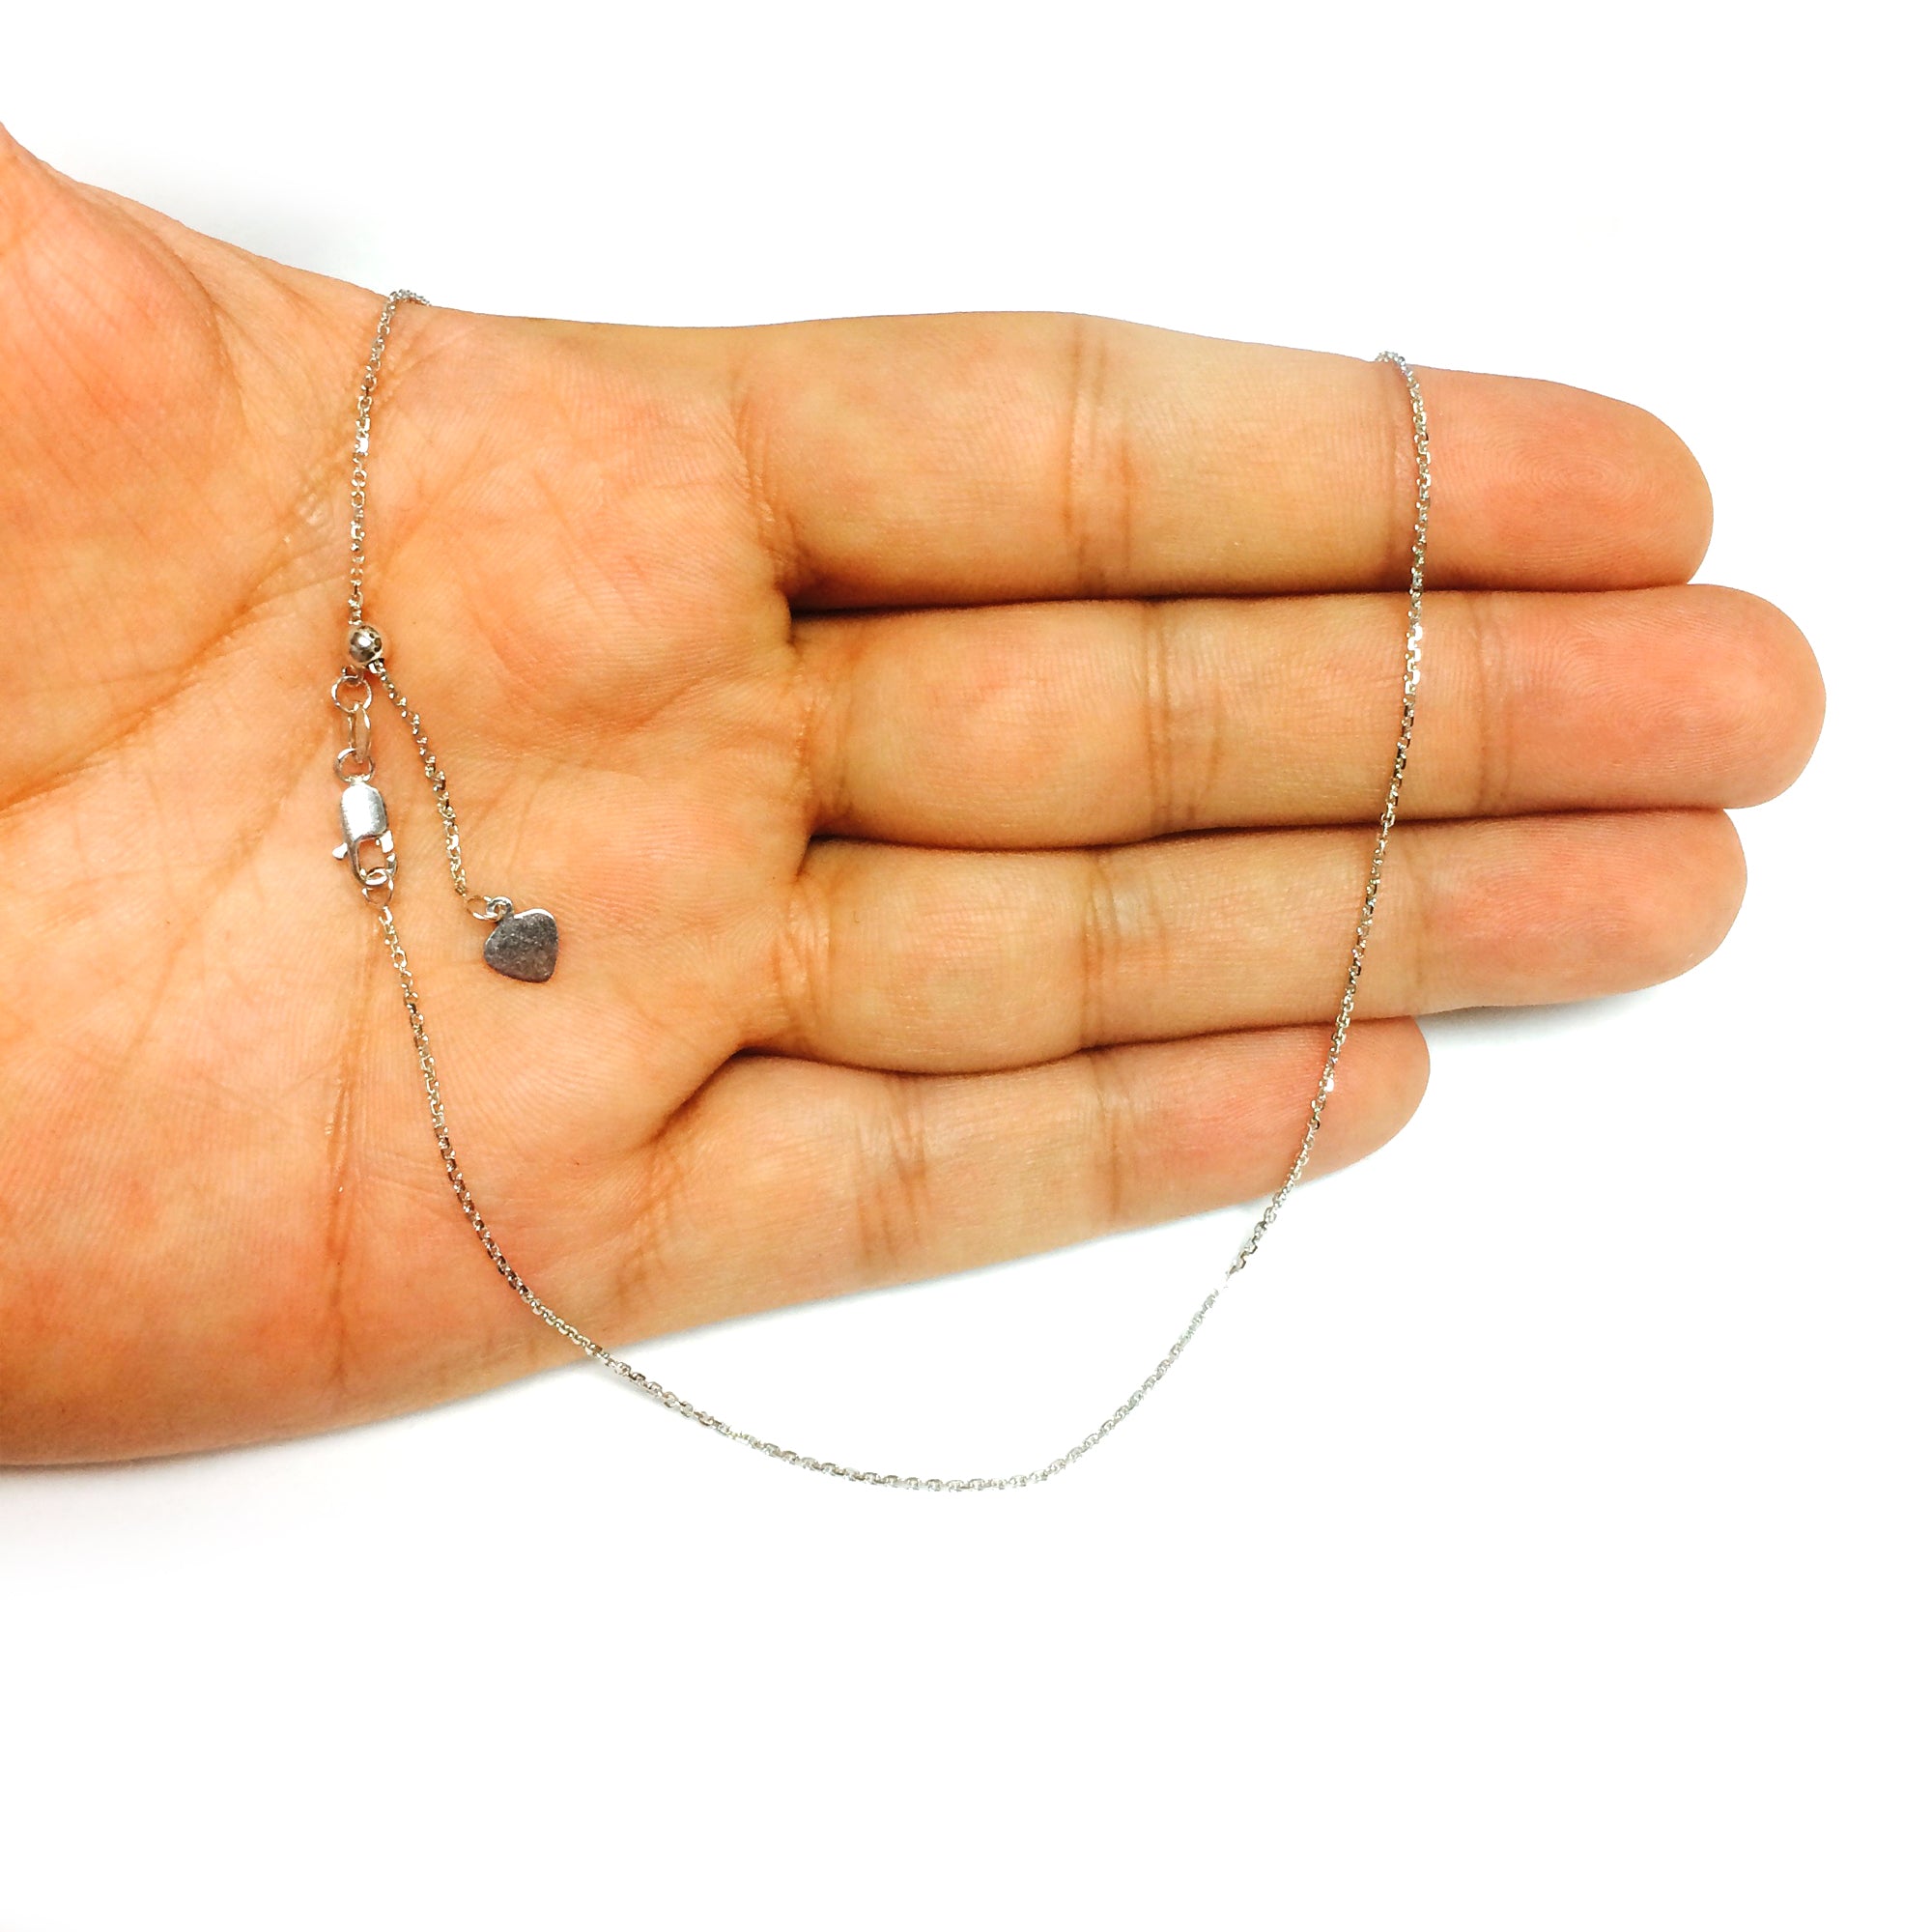 Collar de cadena tipo cable ajustable con baño de rodio en plata de ley, 0,9 mm, 22" joyería fina de diseño para hombres y mujeres